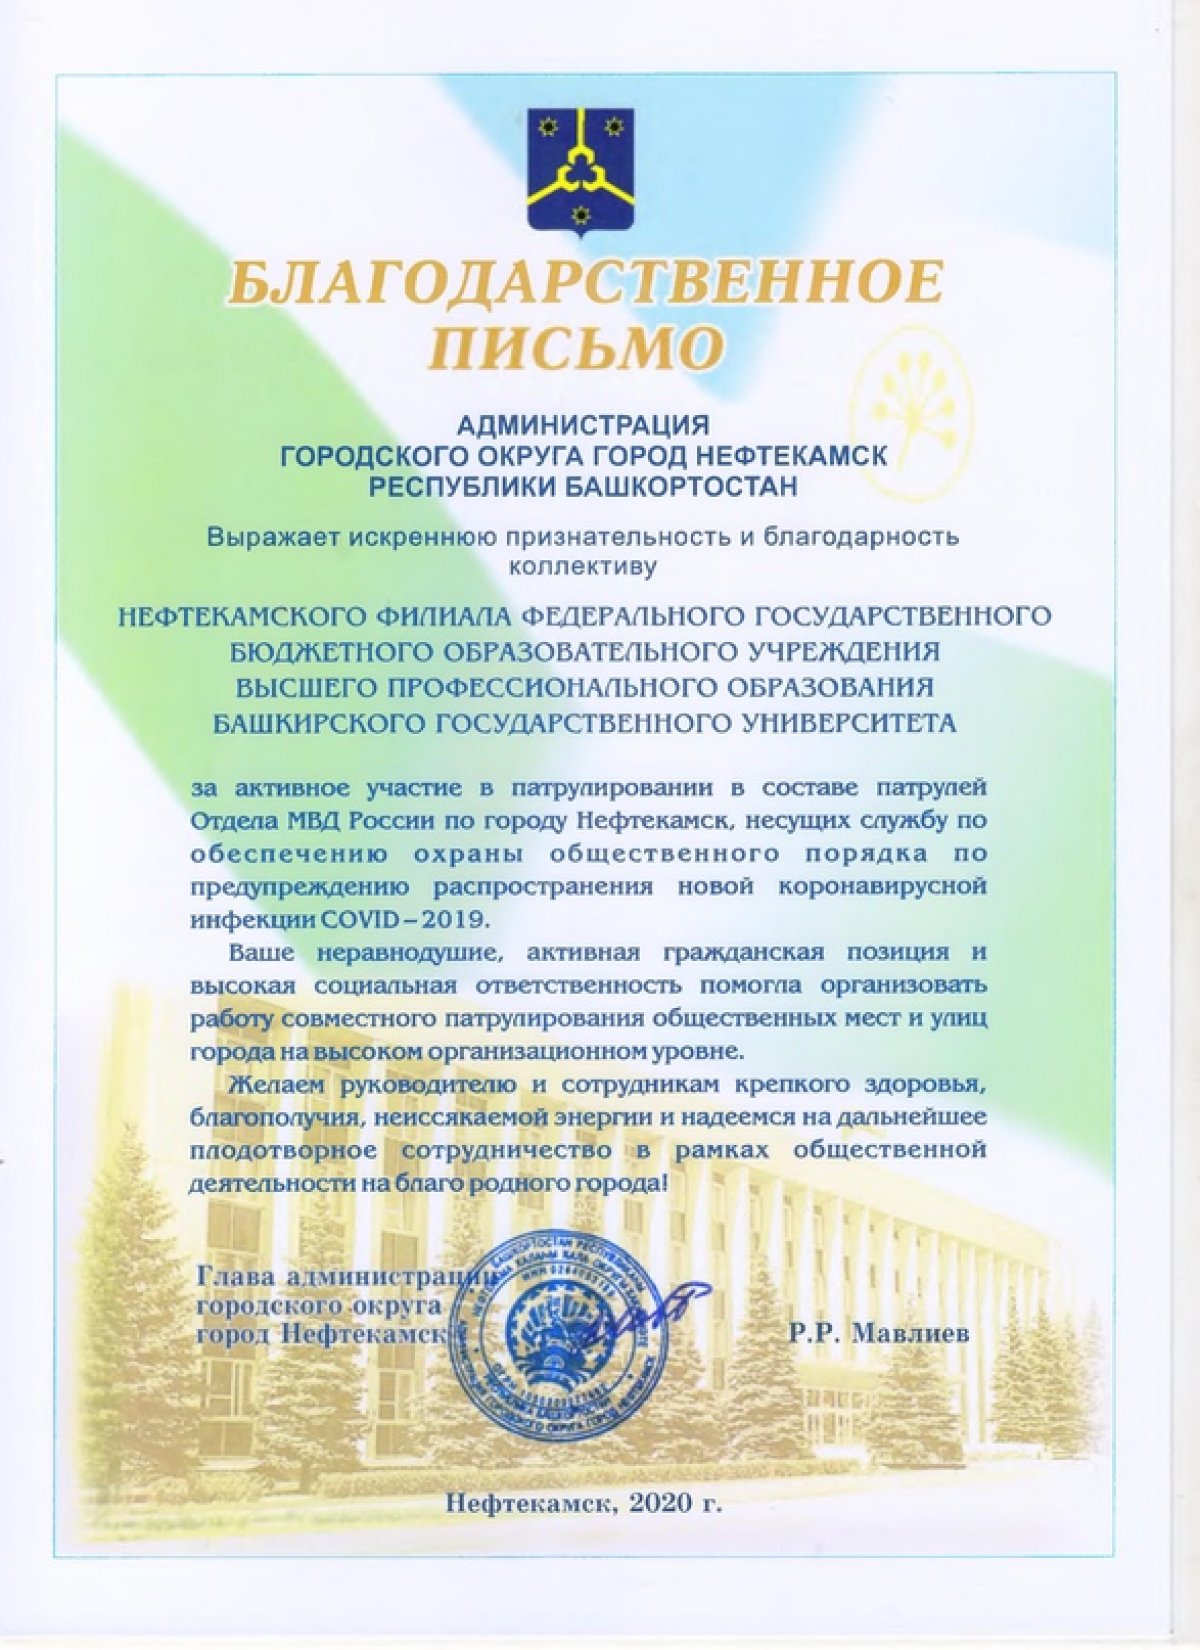 Коллектив Нефтекамского филиала БашГУ отмечен благодарственным письмом Главы администрации г. Нефтекамск